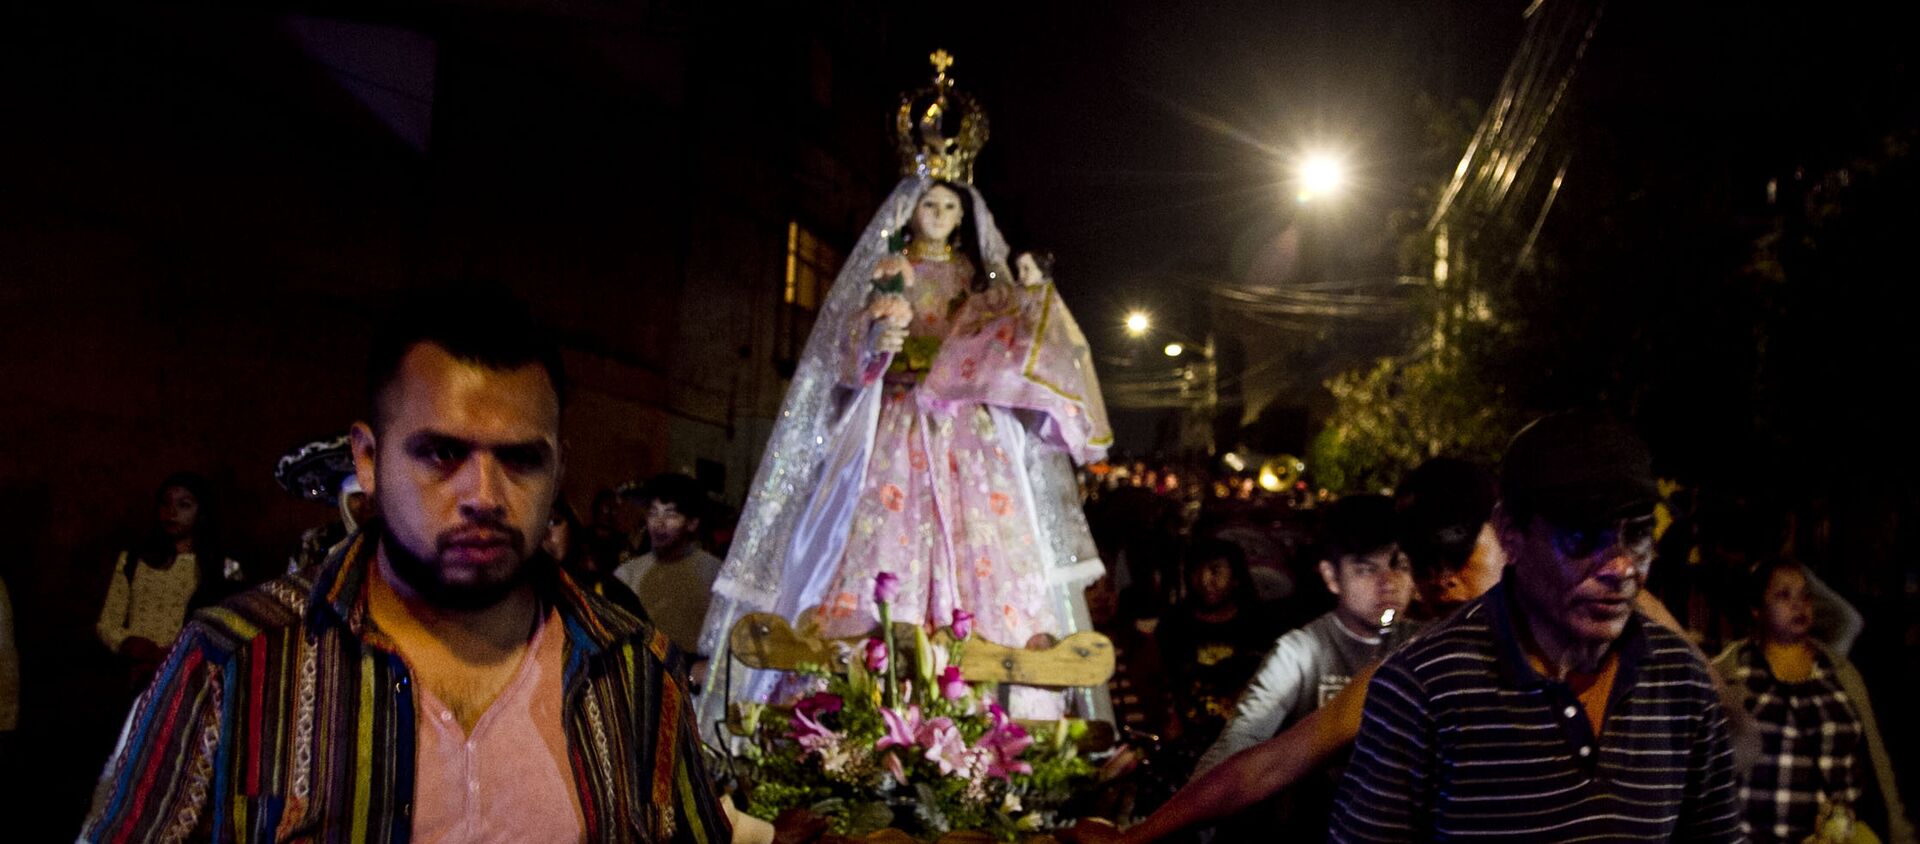 Una de las procesiones en el pueblo de la Candelaria, en Ciudad de México, el día de su santa patrona. - Sputnik Mundo, 1920, 04.02.2019